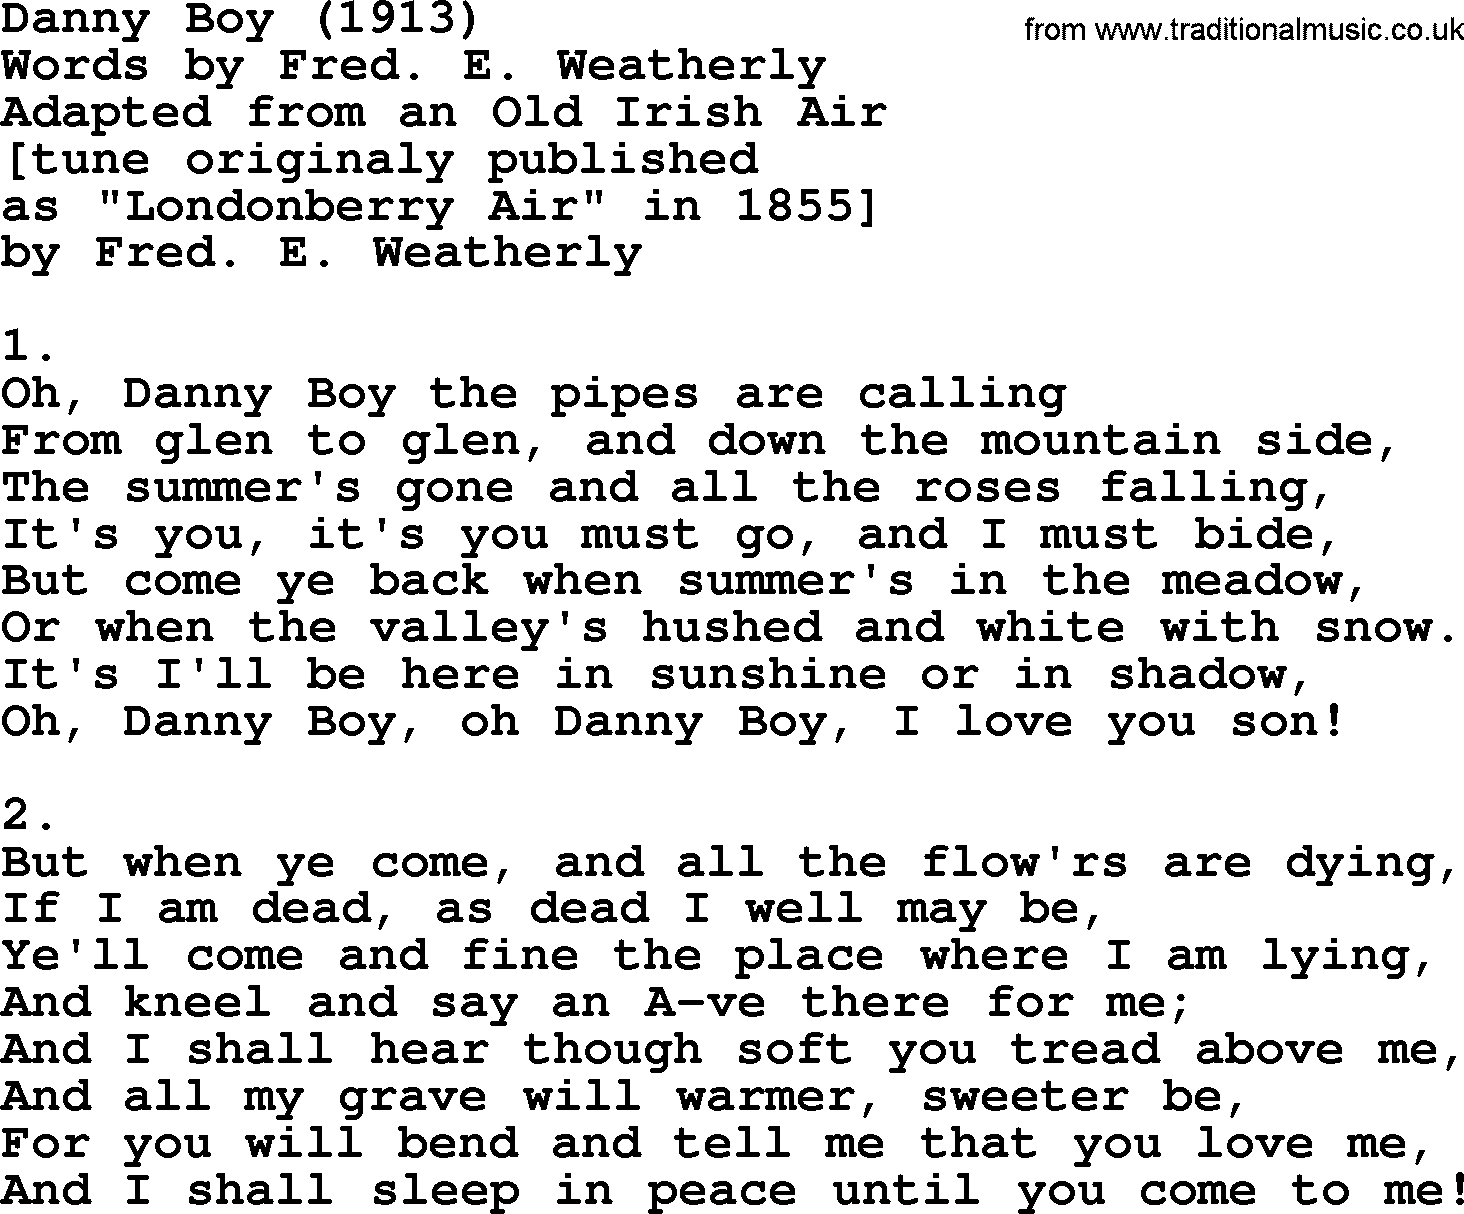 World War(WW1) One Song: Danny Boy 1913, lyrics and PDF